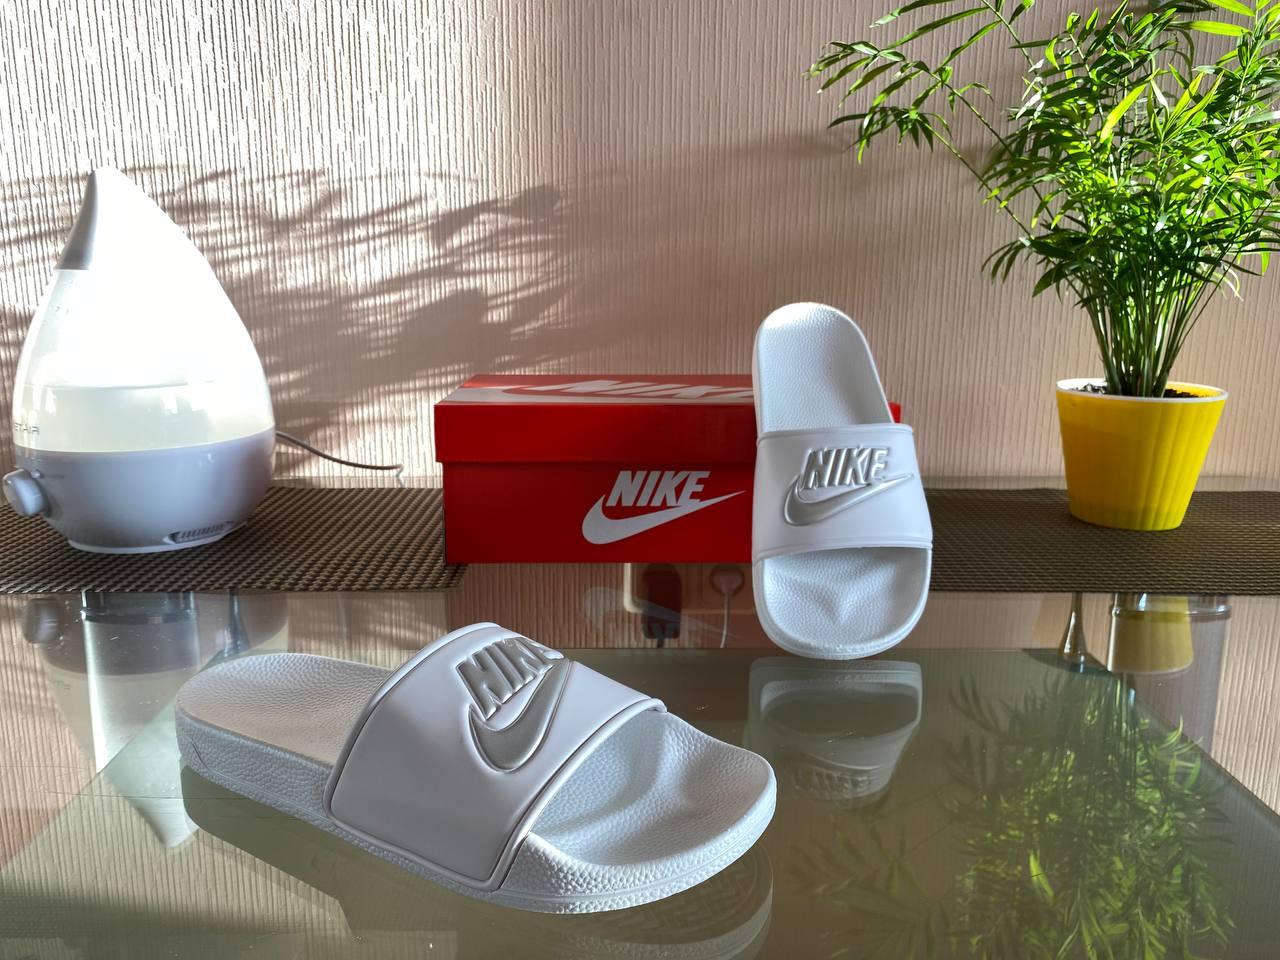 Розмір 41 Чоловічі шльопанці Nike (білі із сірим) світлі стильні відкриті літні шльопанці D369